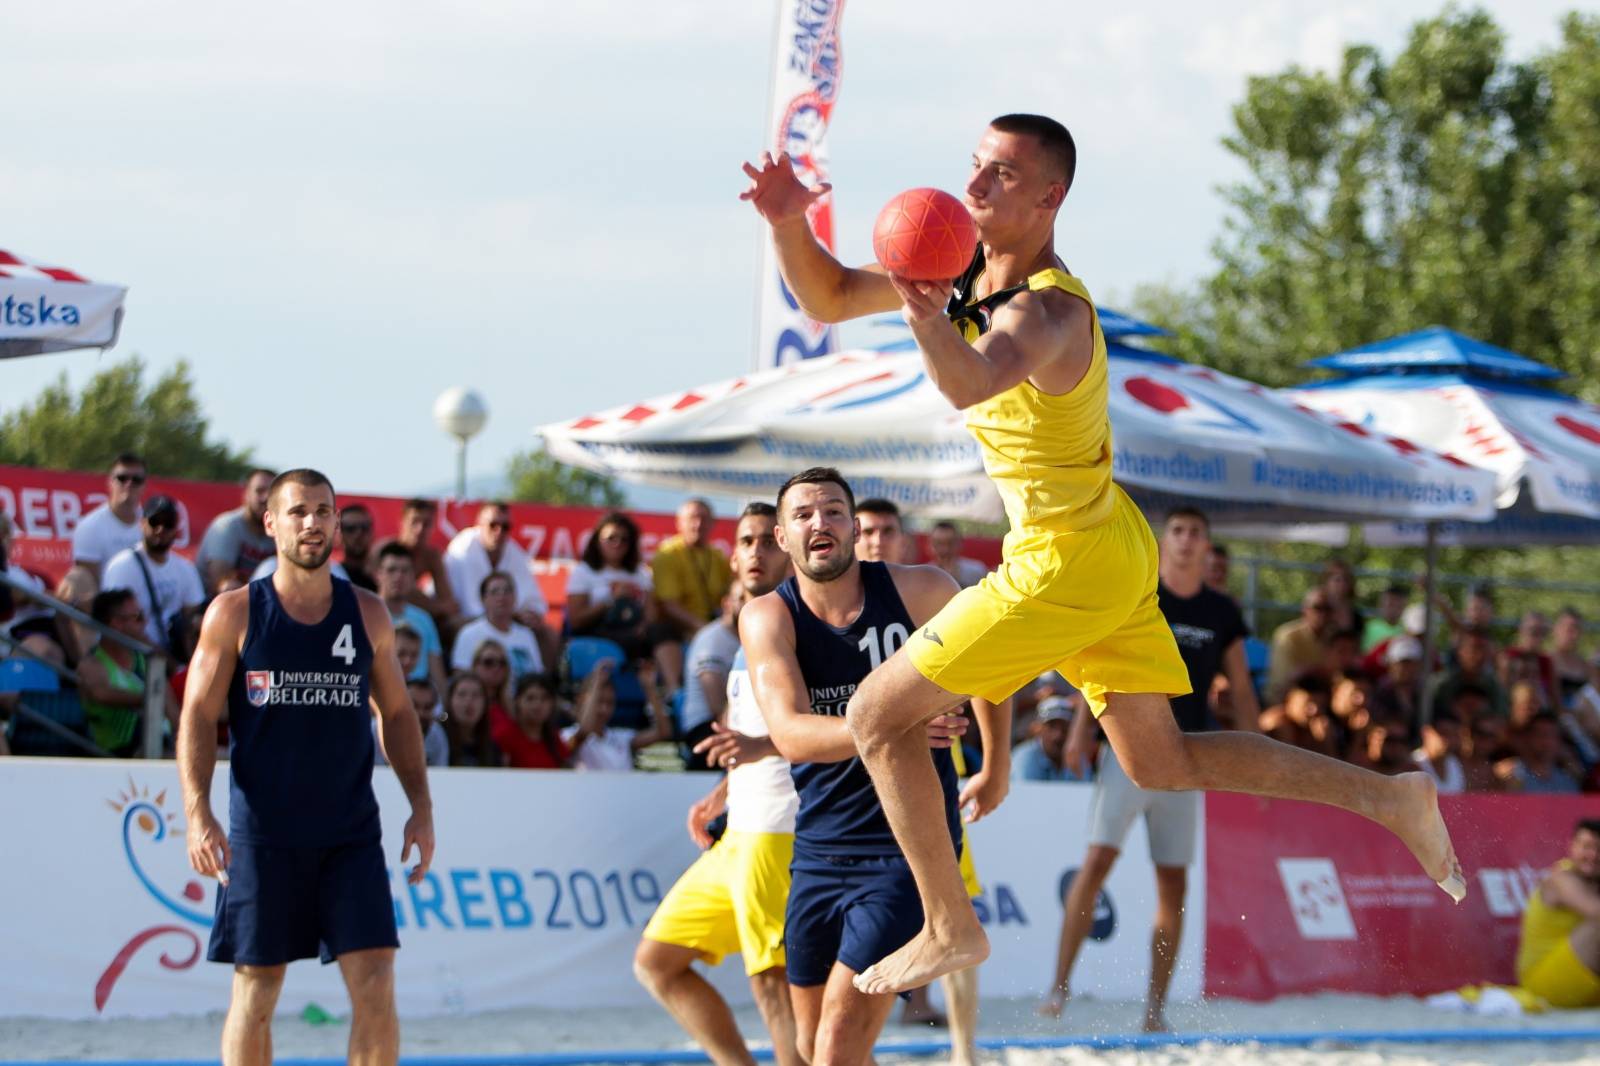 Zagreb: Zensko i musko finale Europskog sveucilisnog natjecanja u rukometu na pijesku